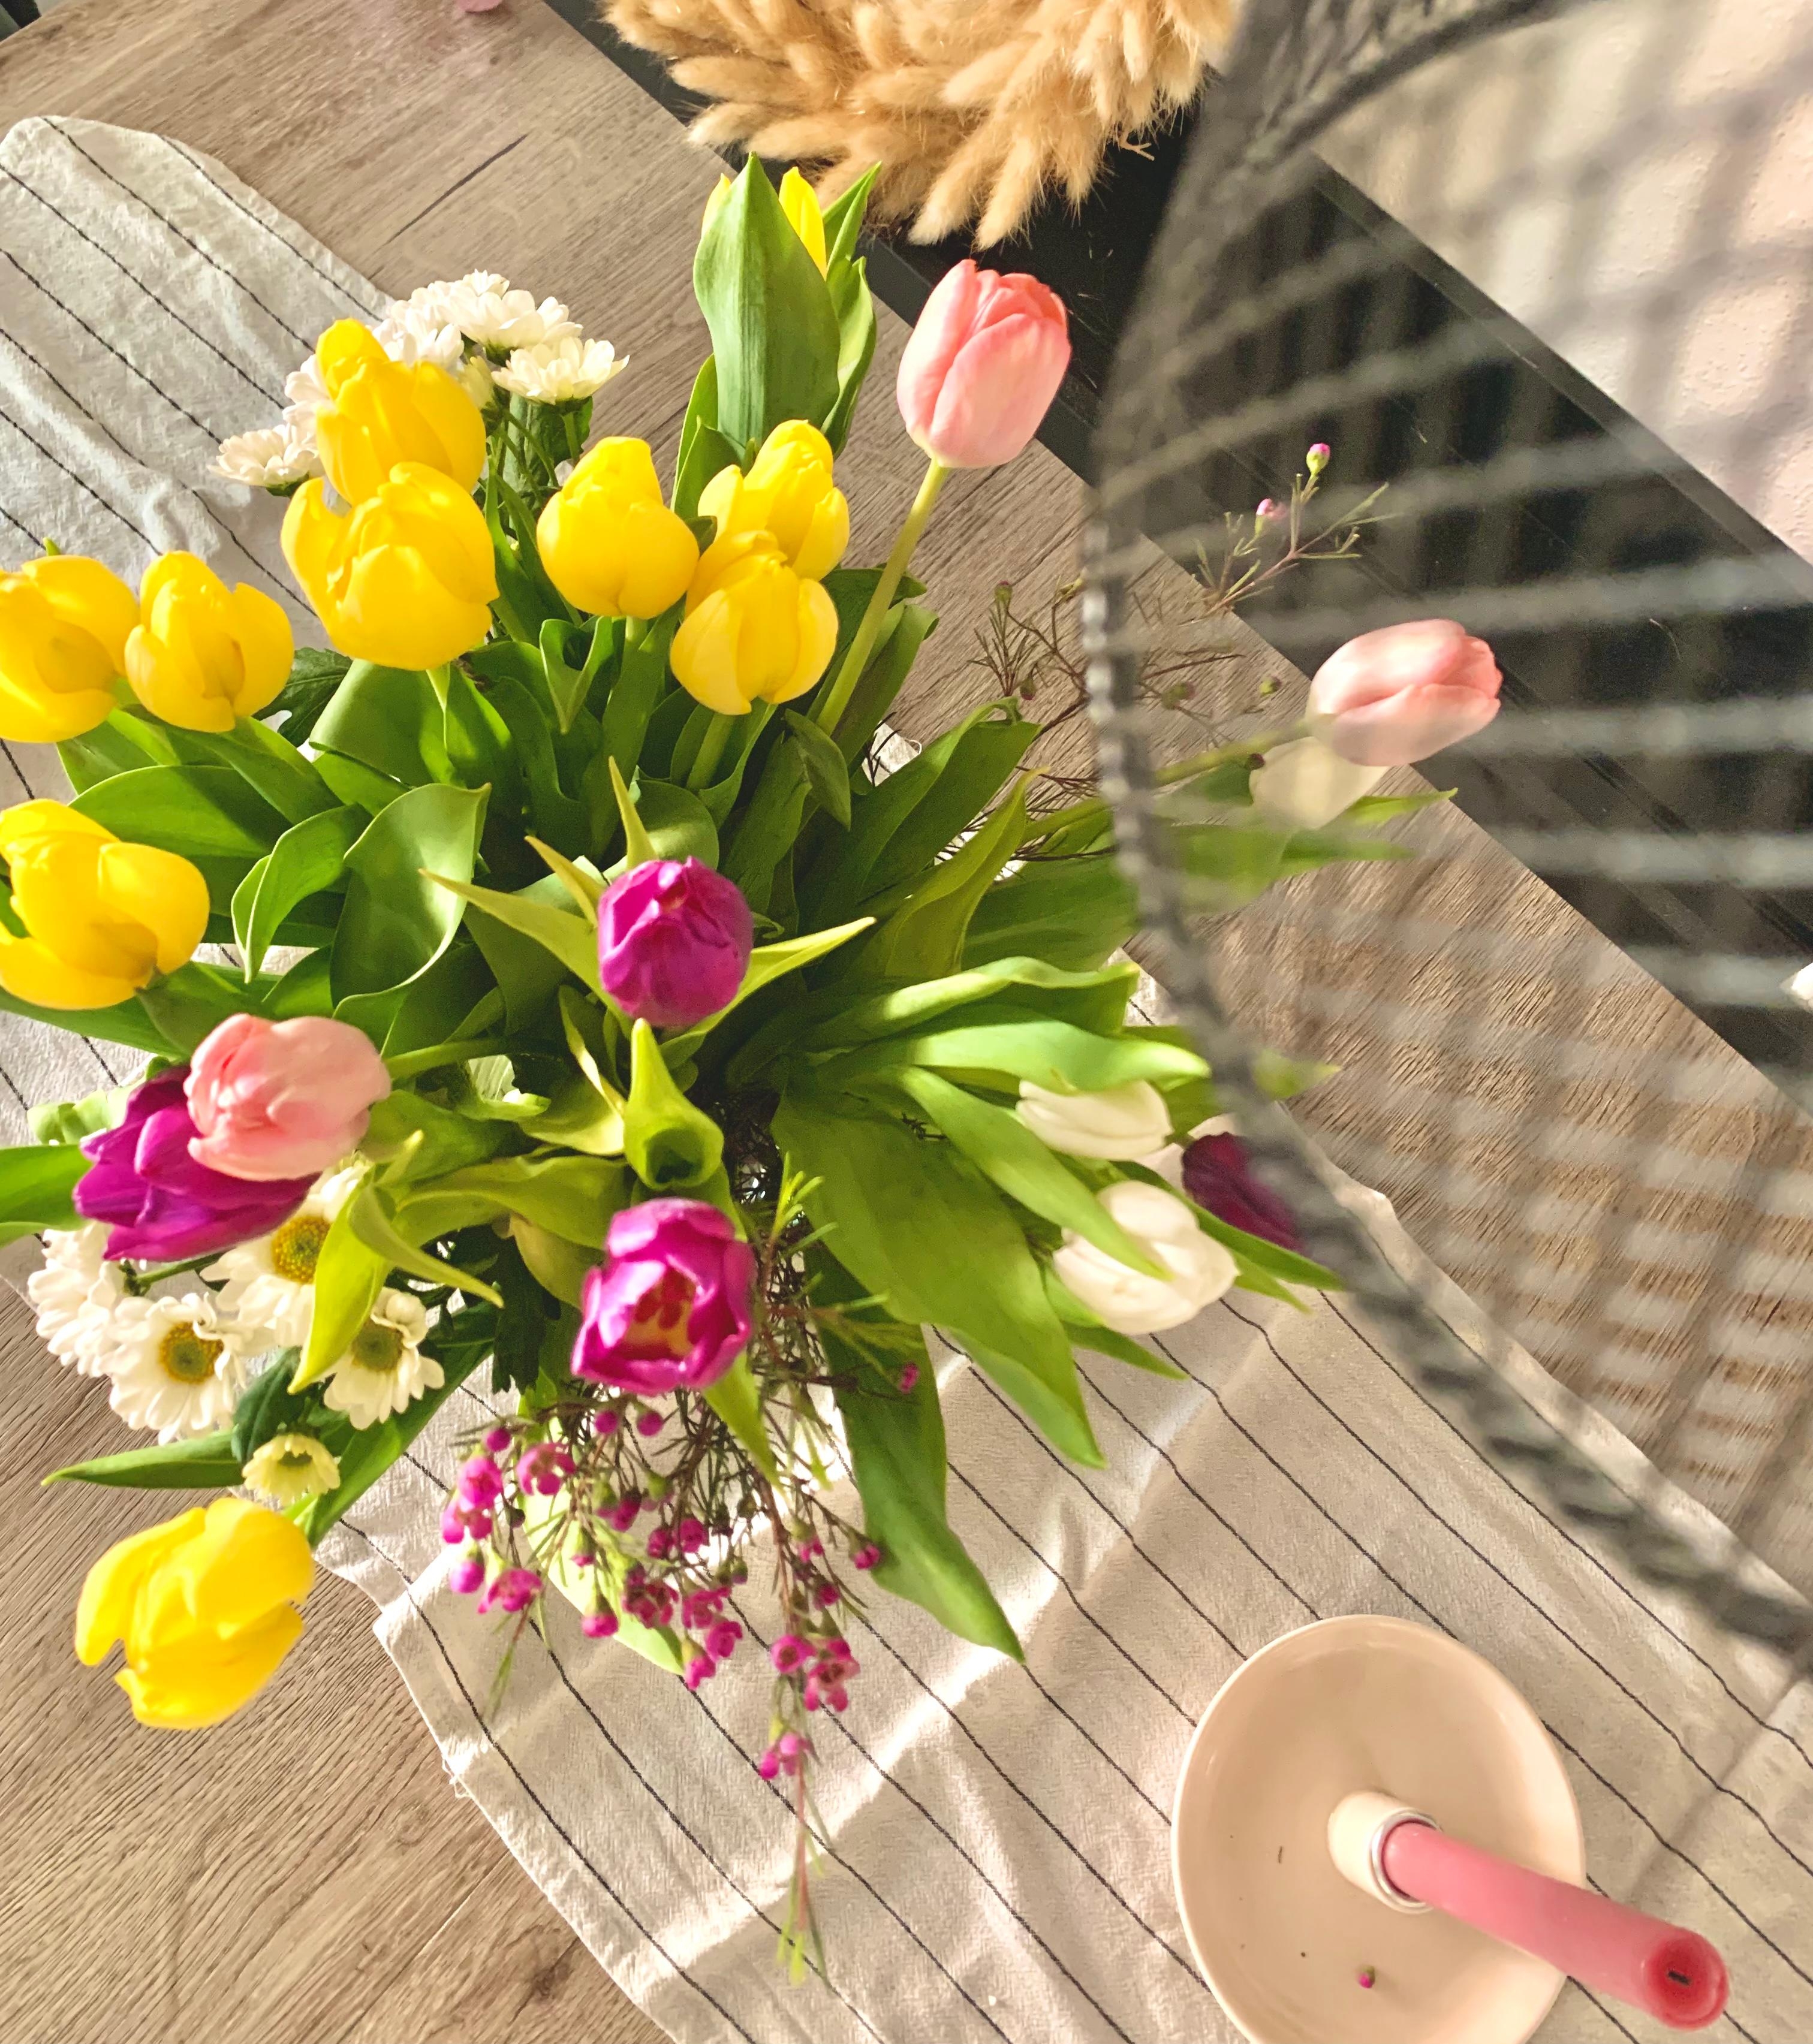 Blumen am Feiertag    💕💕

#flower #spring #esstisch #lampe #kerze #tischläufer #bunt #fröhlich #happy 